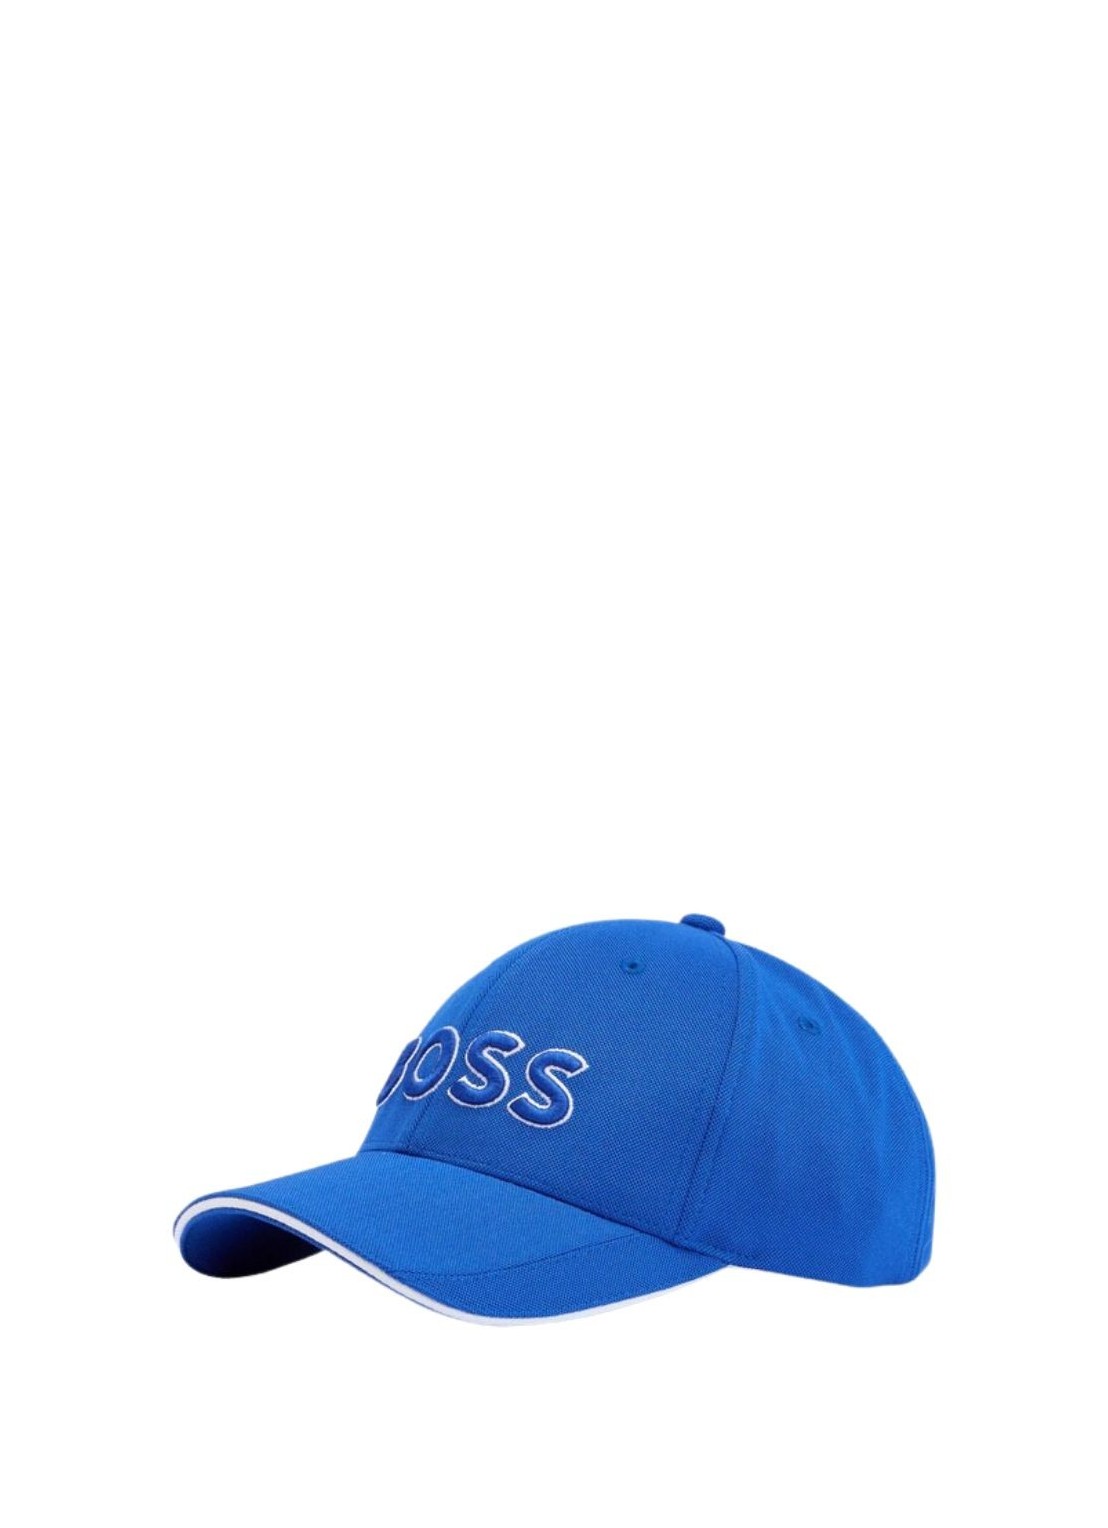 boss cap-us-1 - 50496291 438 T/U Talla